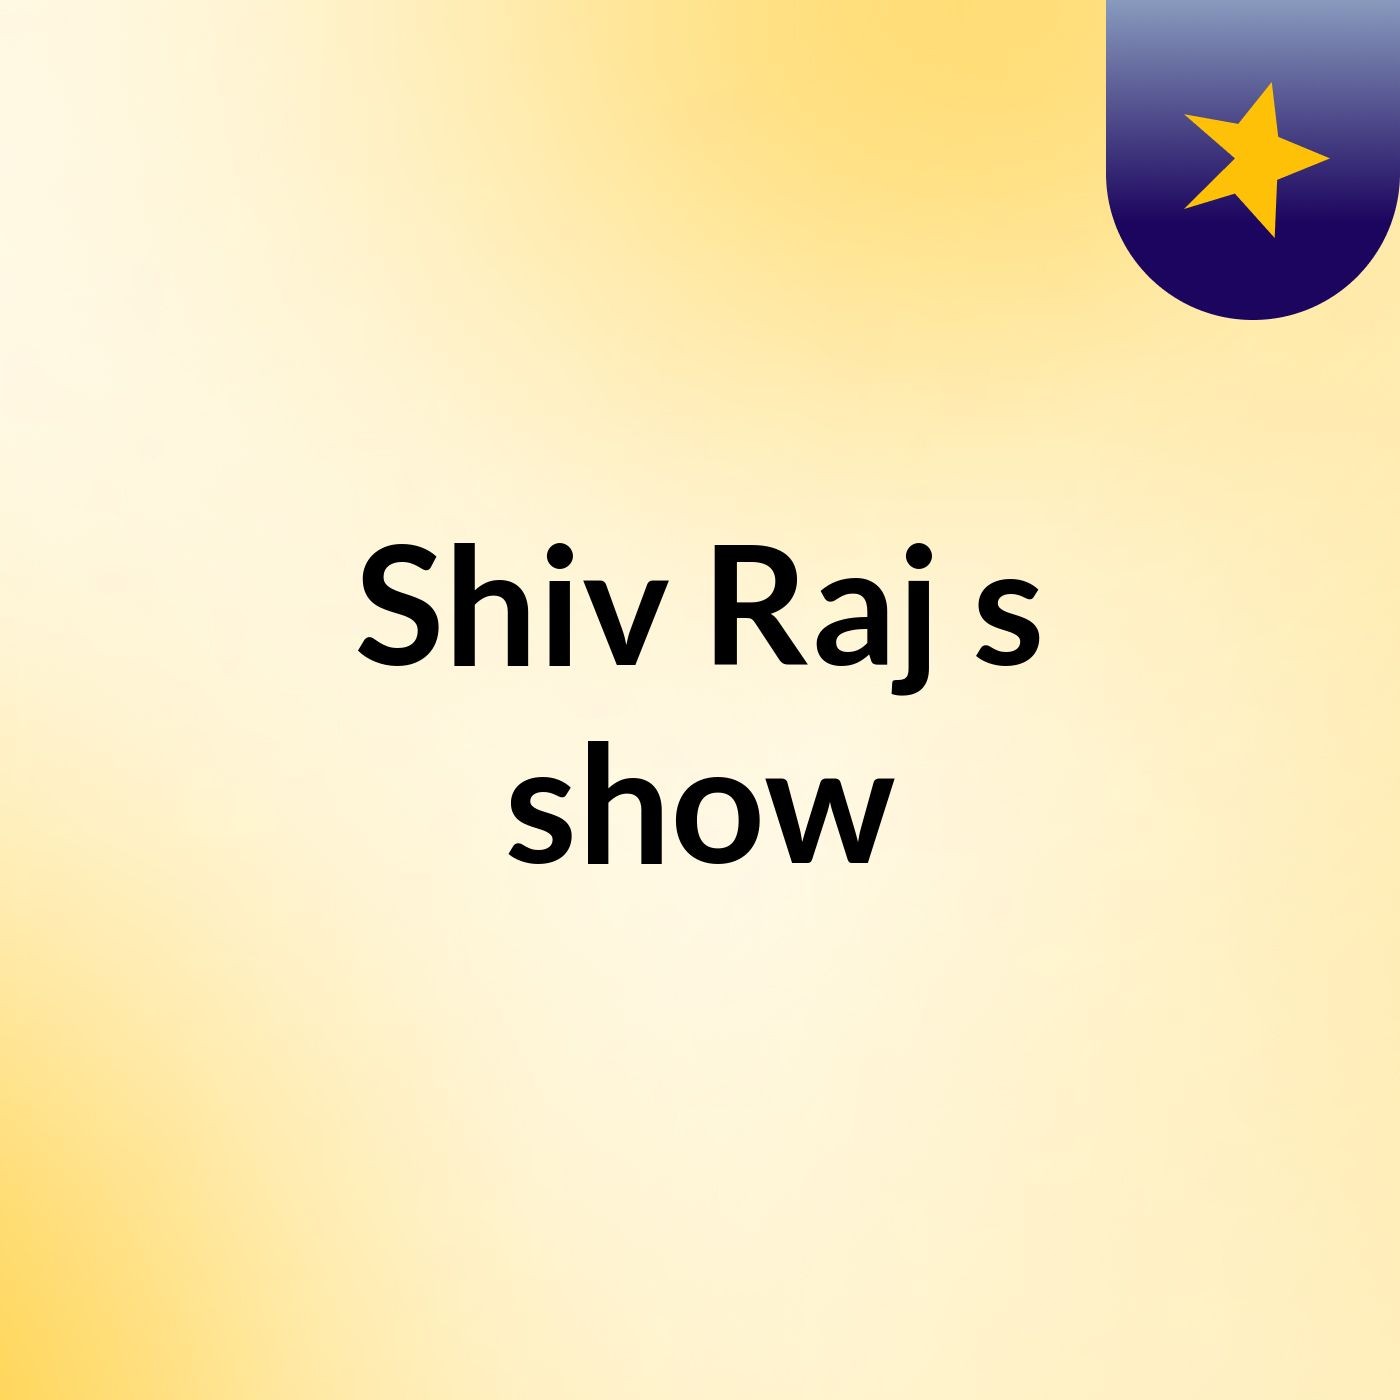 Shiv Raj's show